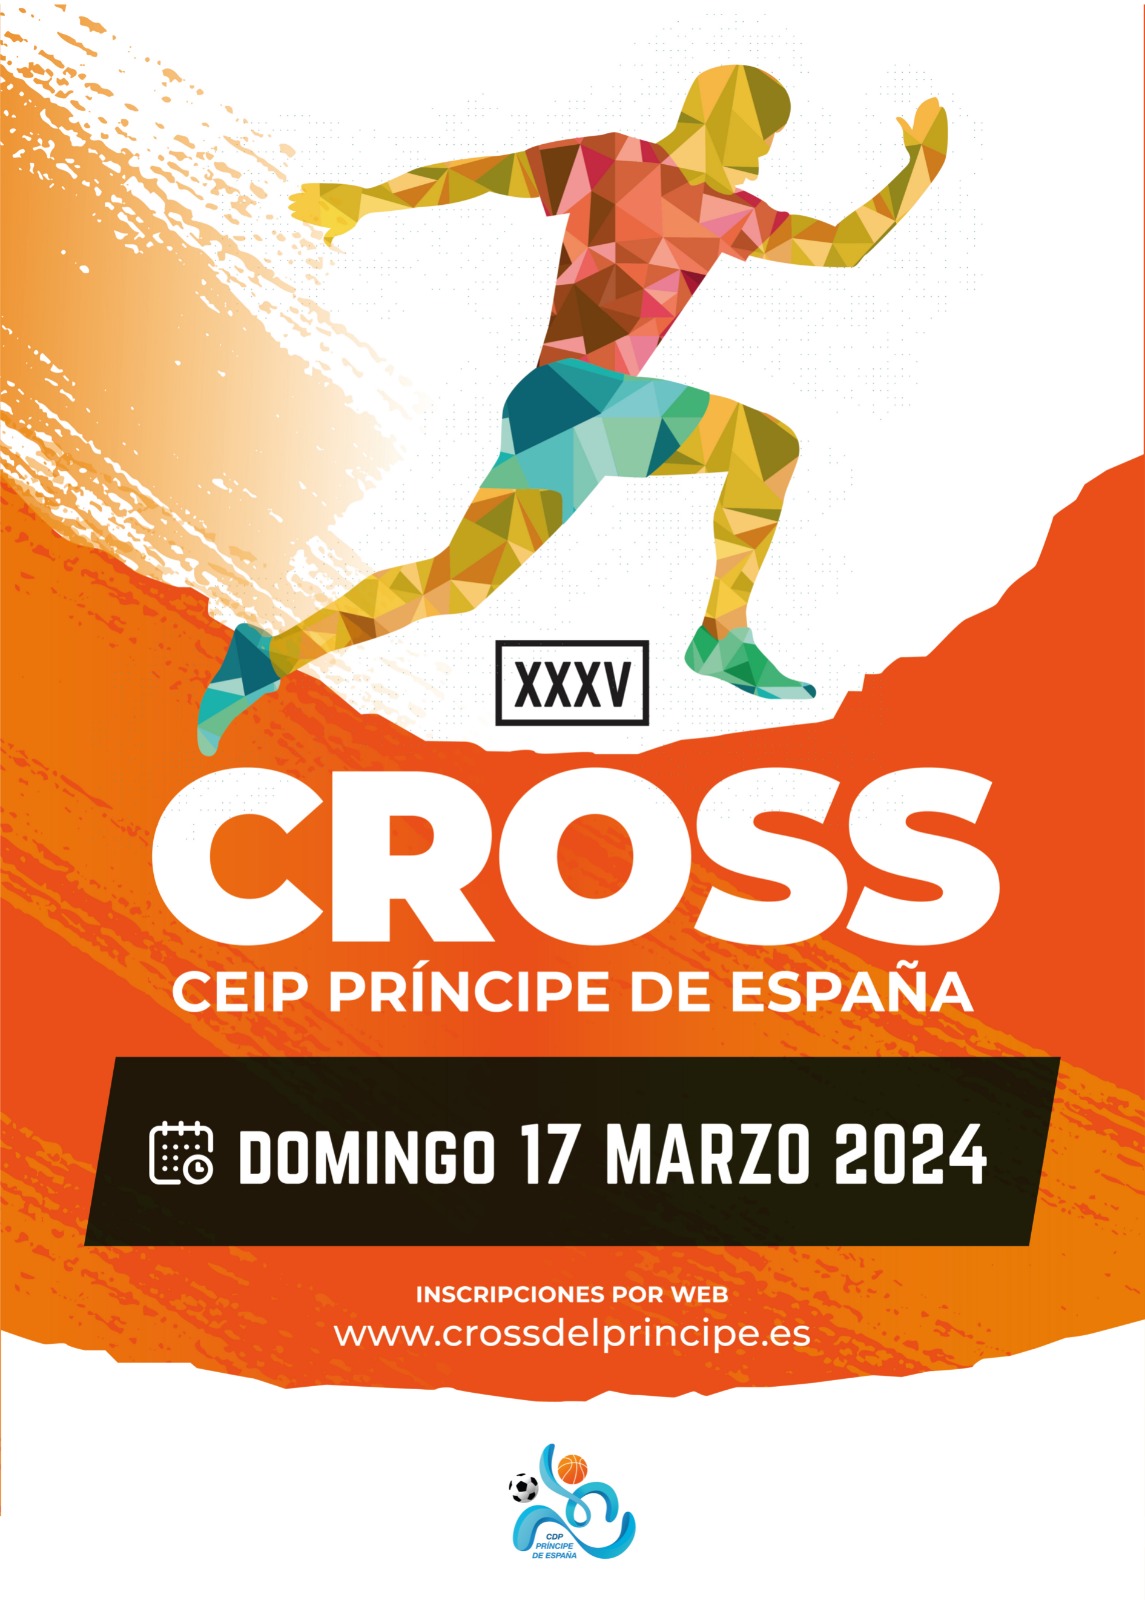 XXXV Cross Príncipe de España